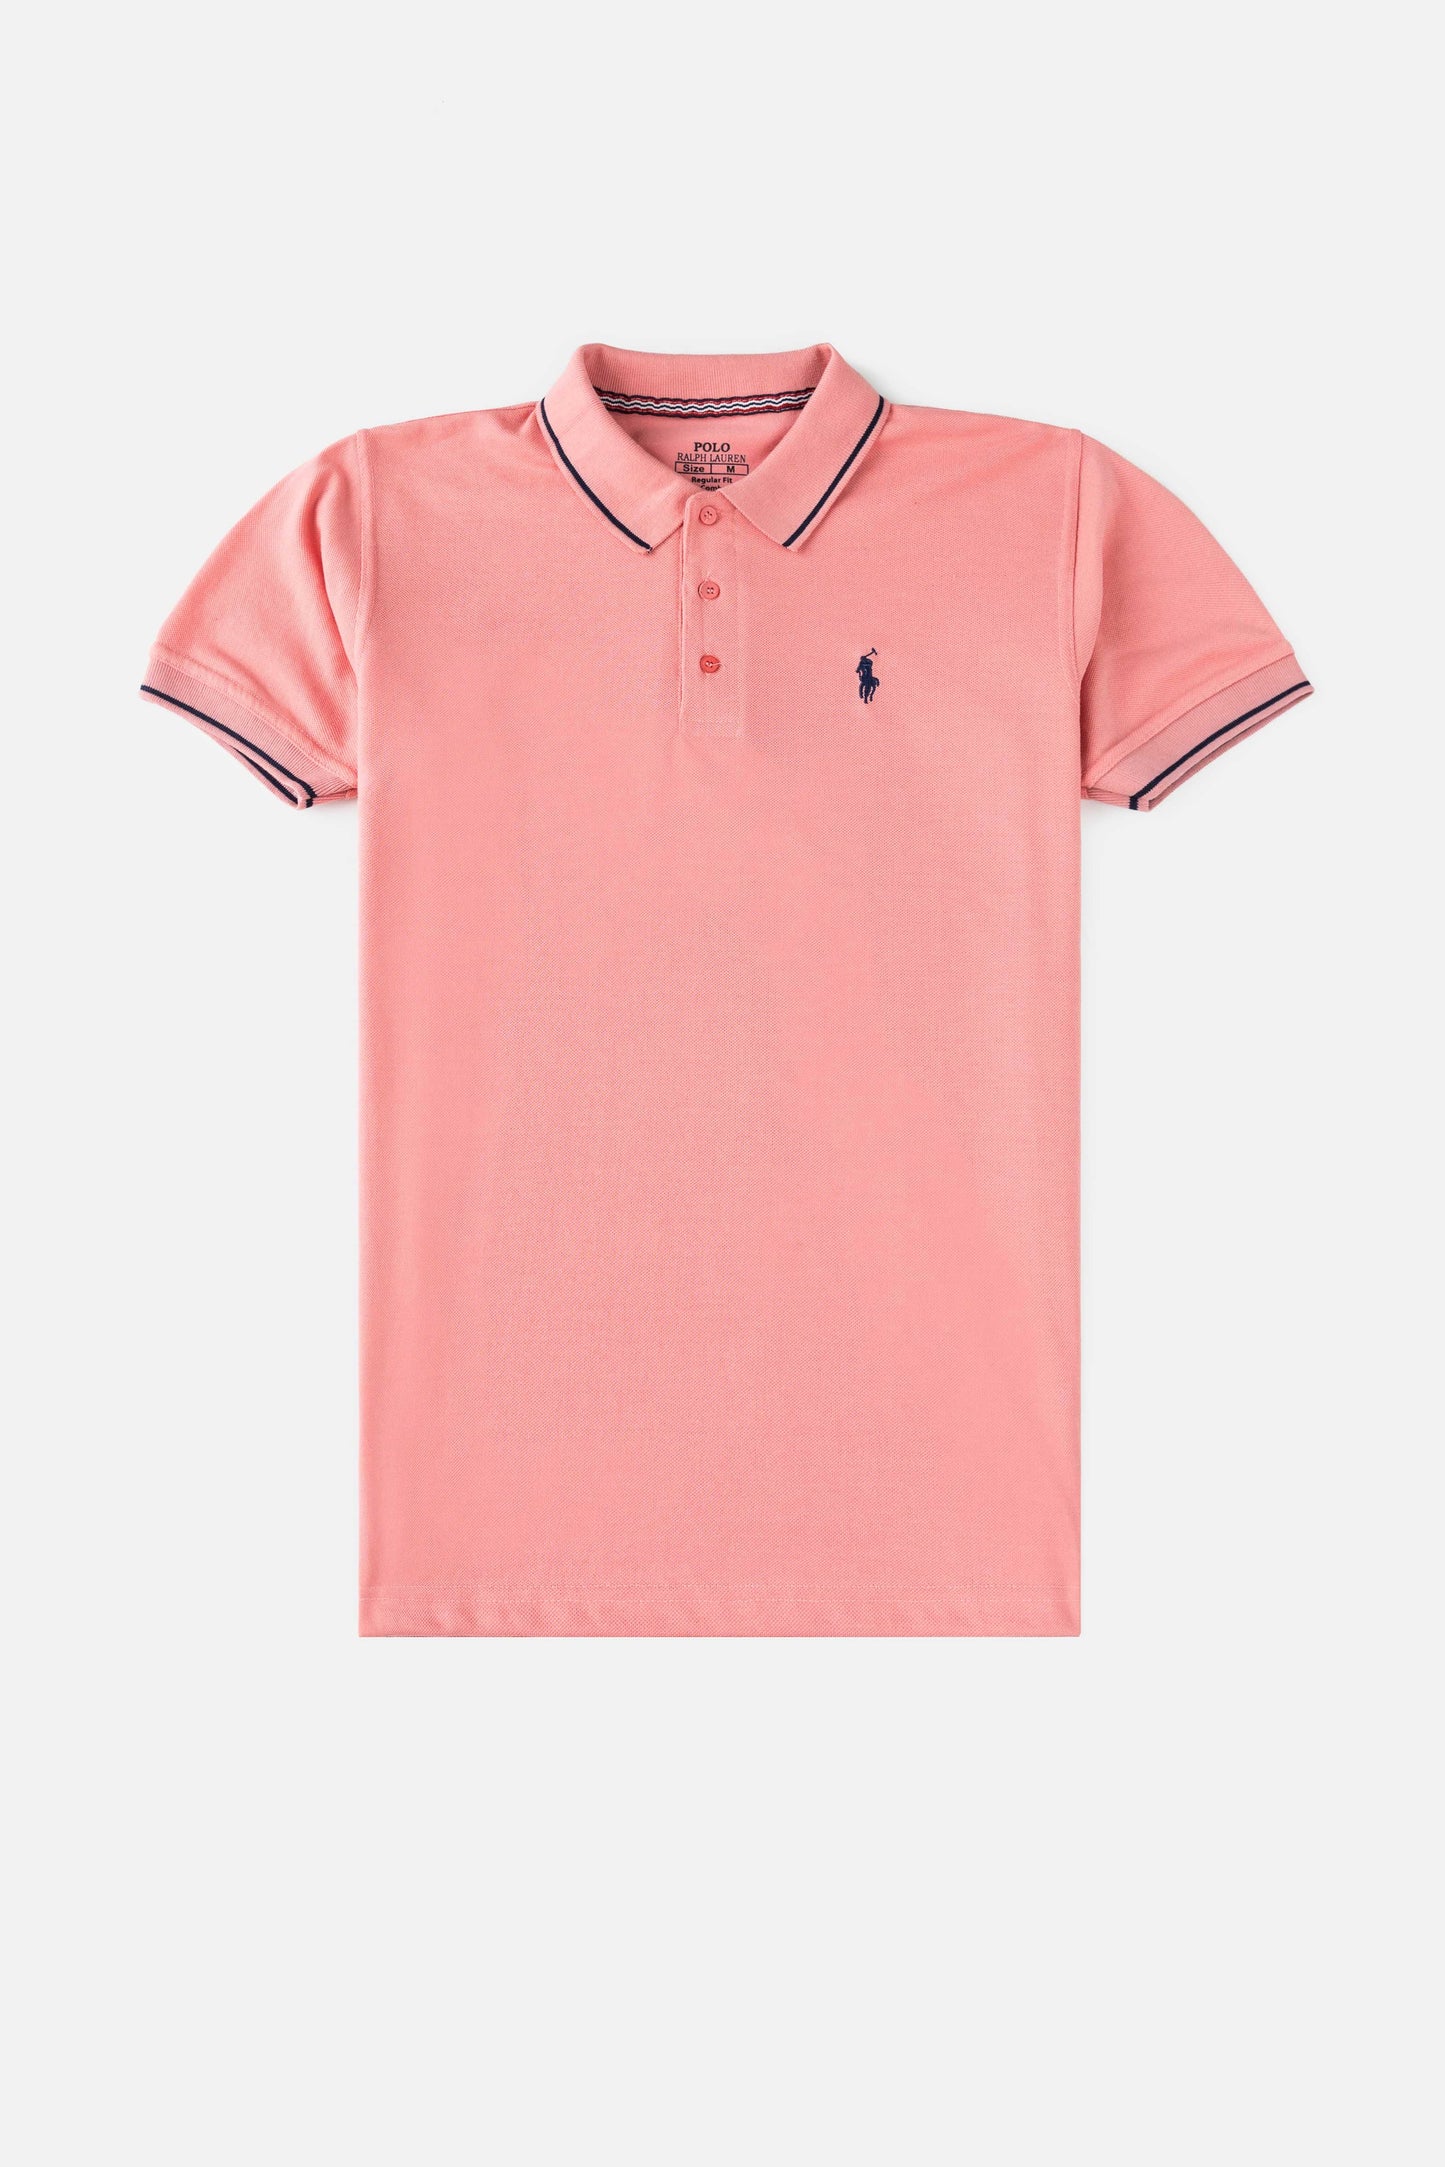 RL Cotton Tipping Polo Shirt – Flamingo